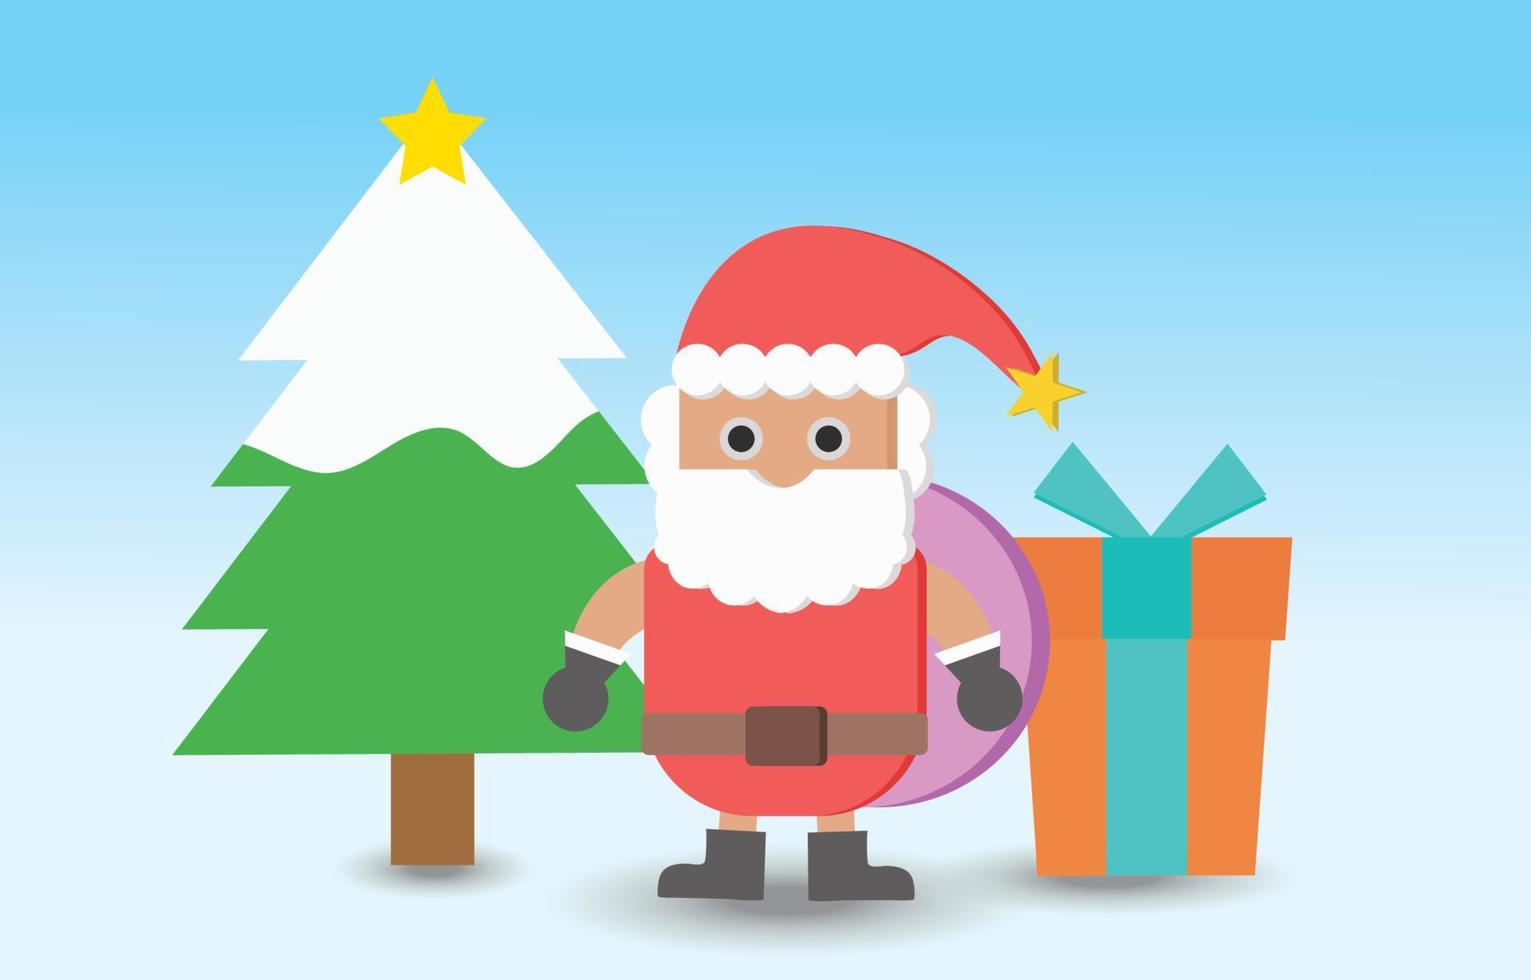 vektorweihnachtstaghintergrund mit weihnachtsmann, weihnachtsbaum und geschenkbox .illustration vektor des weihnachtstaghintergrundverkaufskonzepts